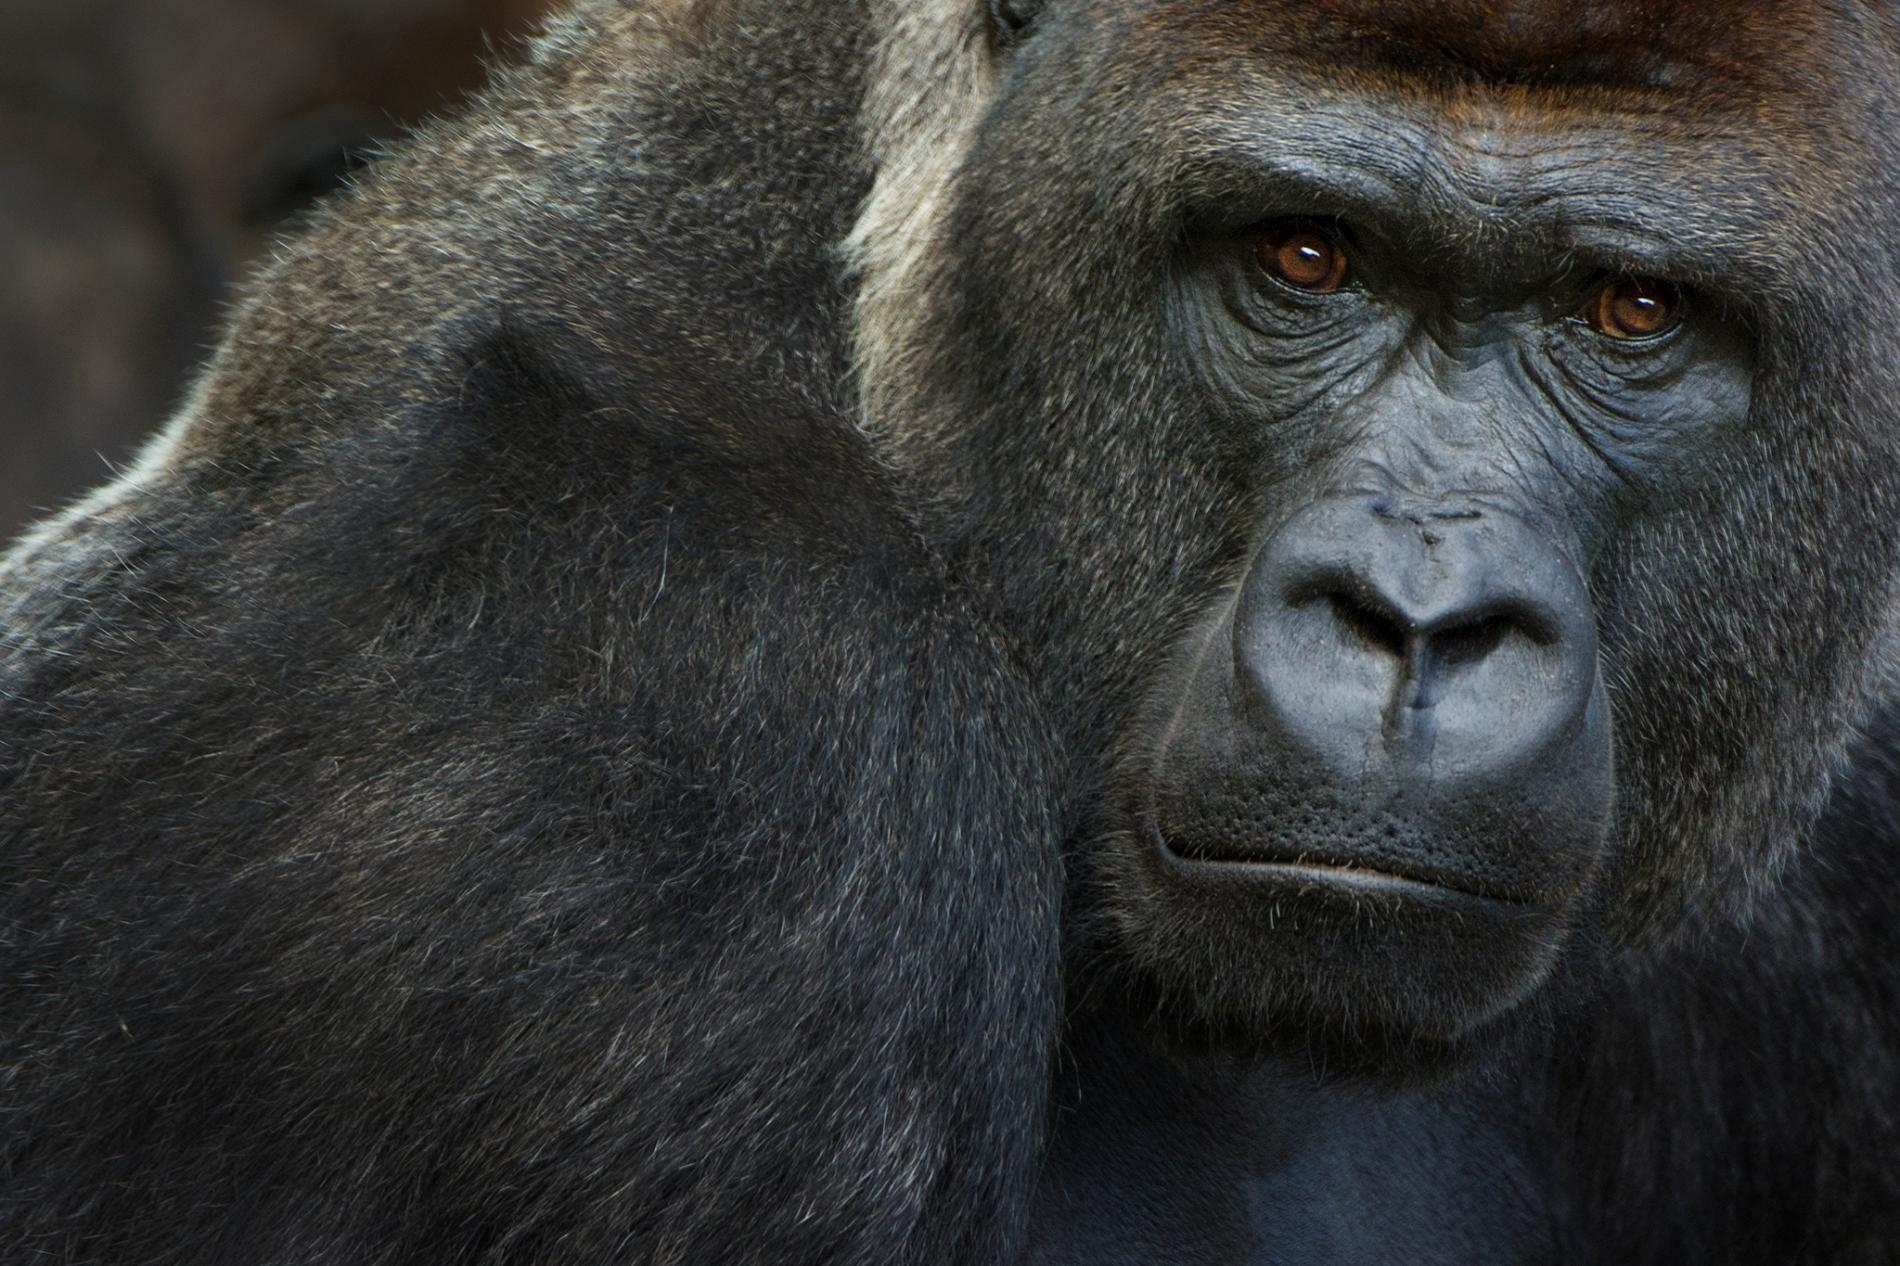 我們已知極度瀕危的西部低地大猩猩容易感染新型冠狀病毒。1月11日，聖地牙哥野生動物園有三隻西部低地大猩猩被檢測出陽性。PHOTOGRAPH BY EDWIN GIESBERS, NATURE PICTURE LIBRARY